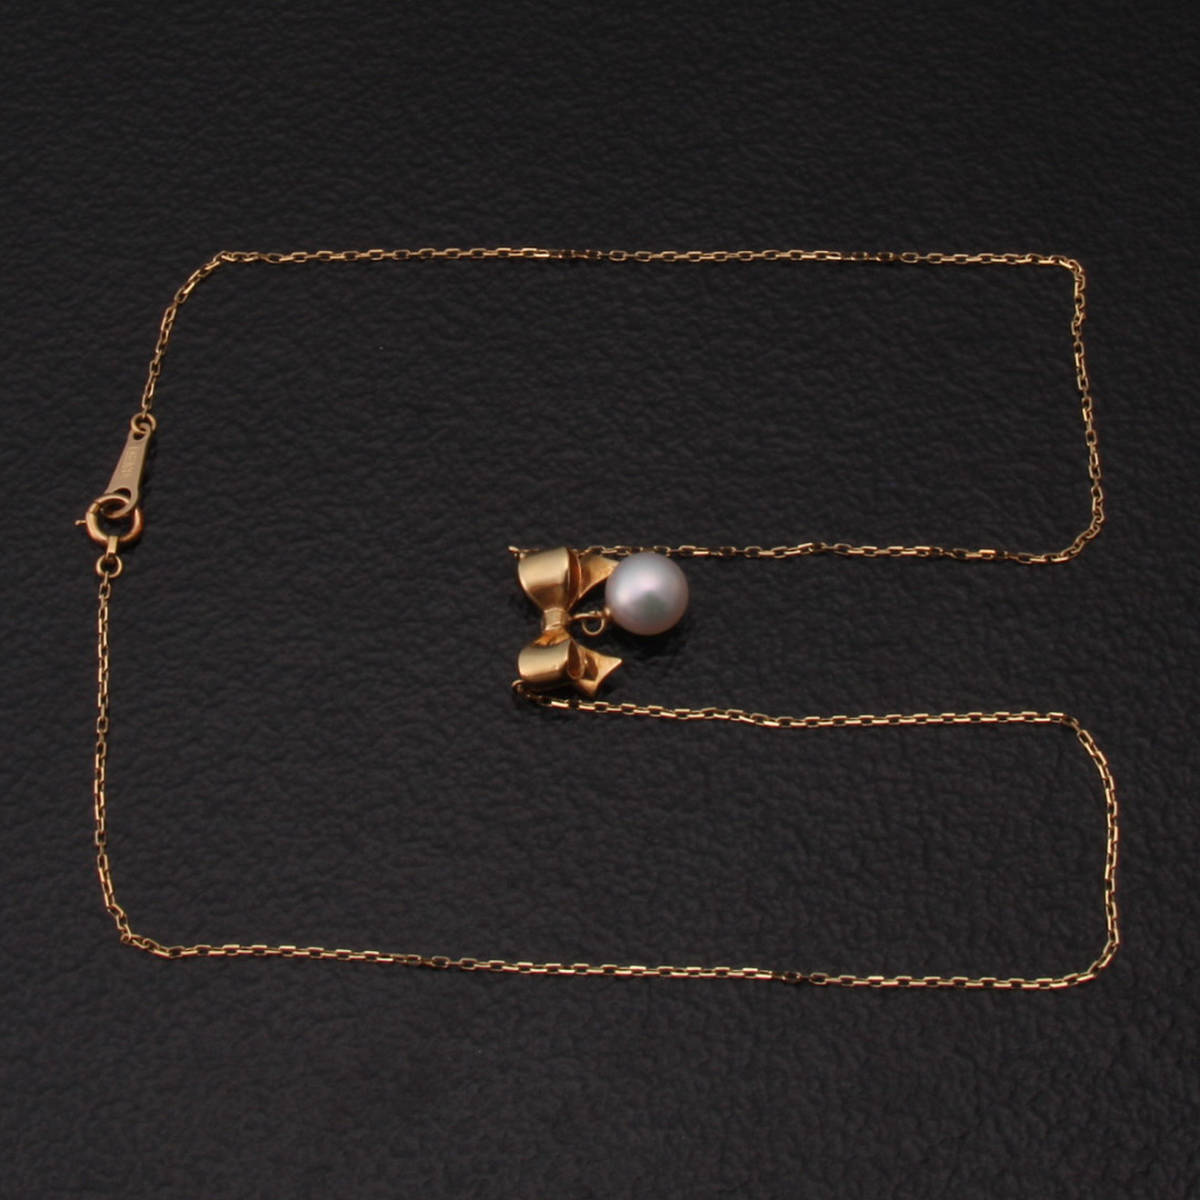 ハッピープライス 【新品】あこや黒蝶養殖真珠K18金のネックレス ネックレス